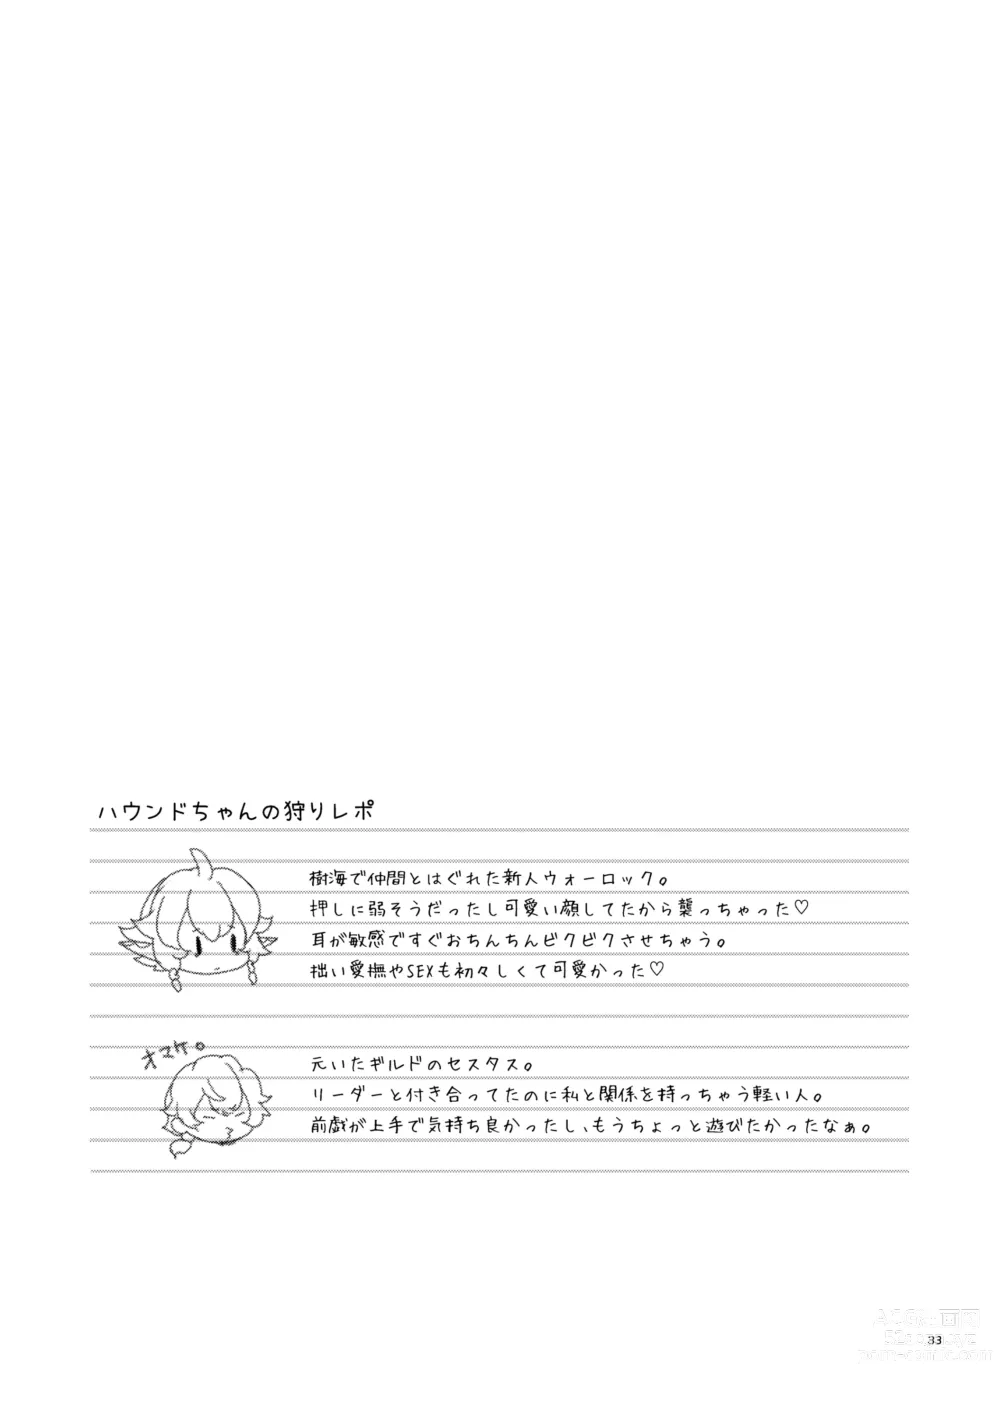 Page 33 of doujinshi Hound-chan wa Ecchi ga Shitai.